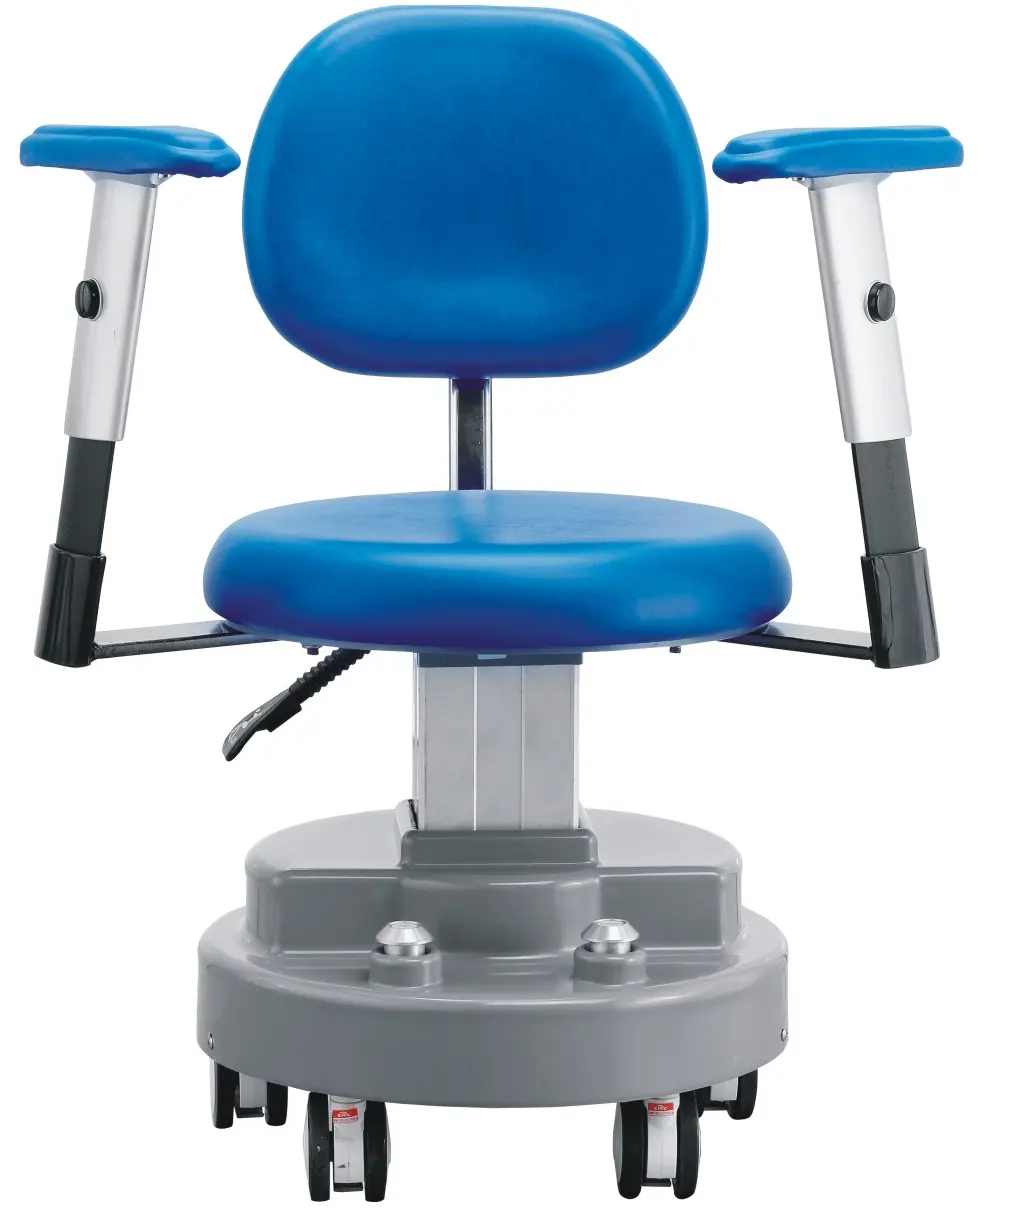 Cadeira cirúrgica elétrica ajustável de altura do uso da sala operacional do hospital uso